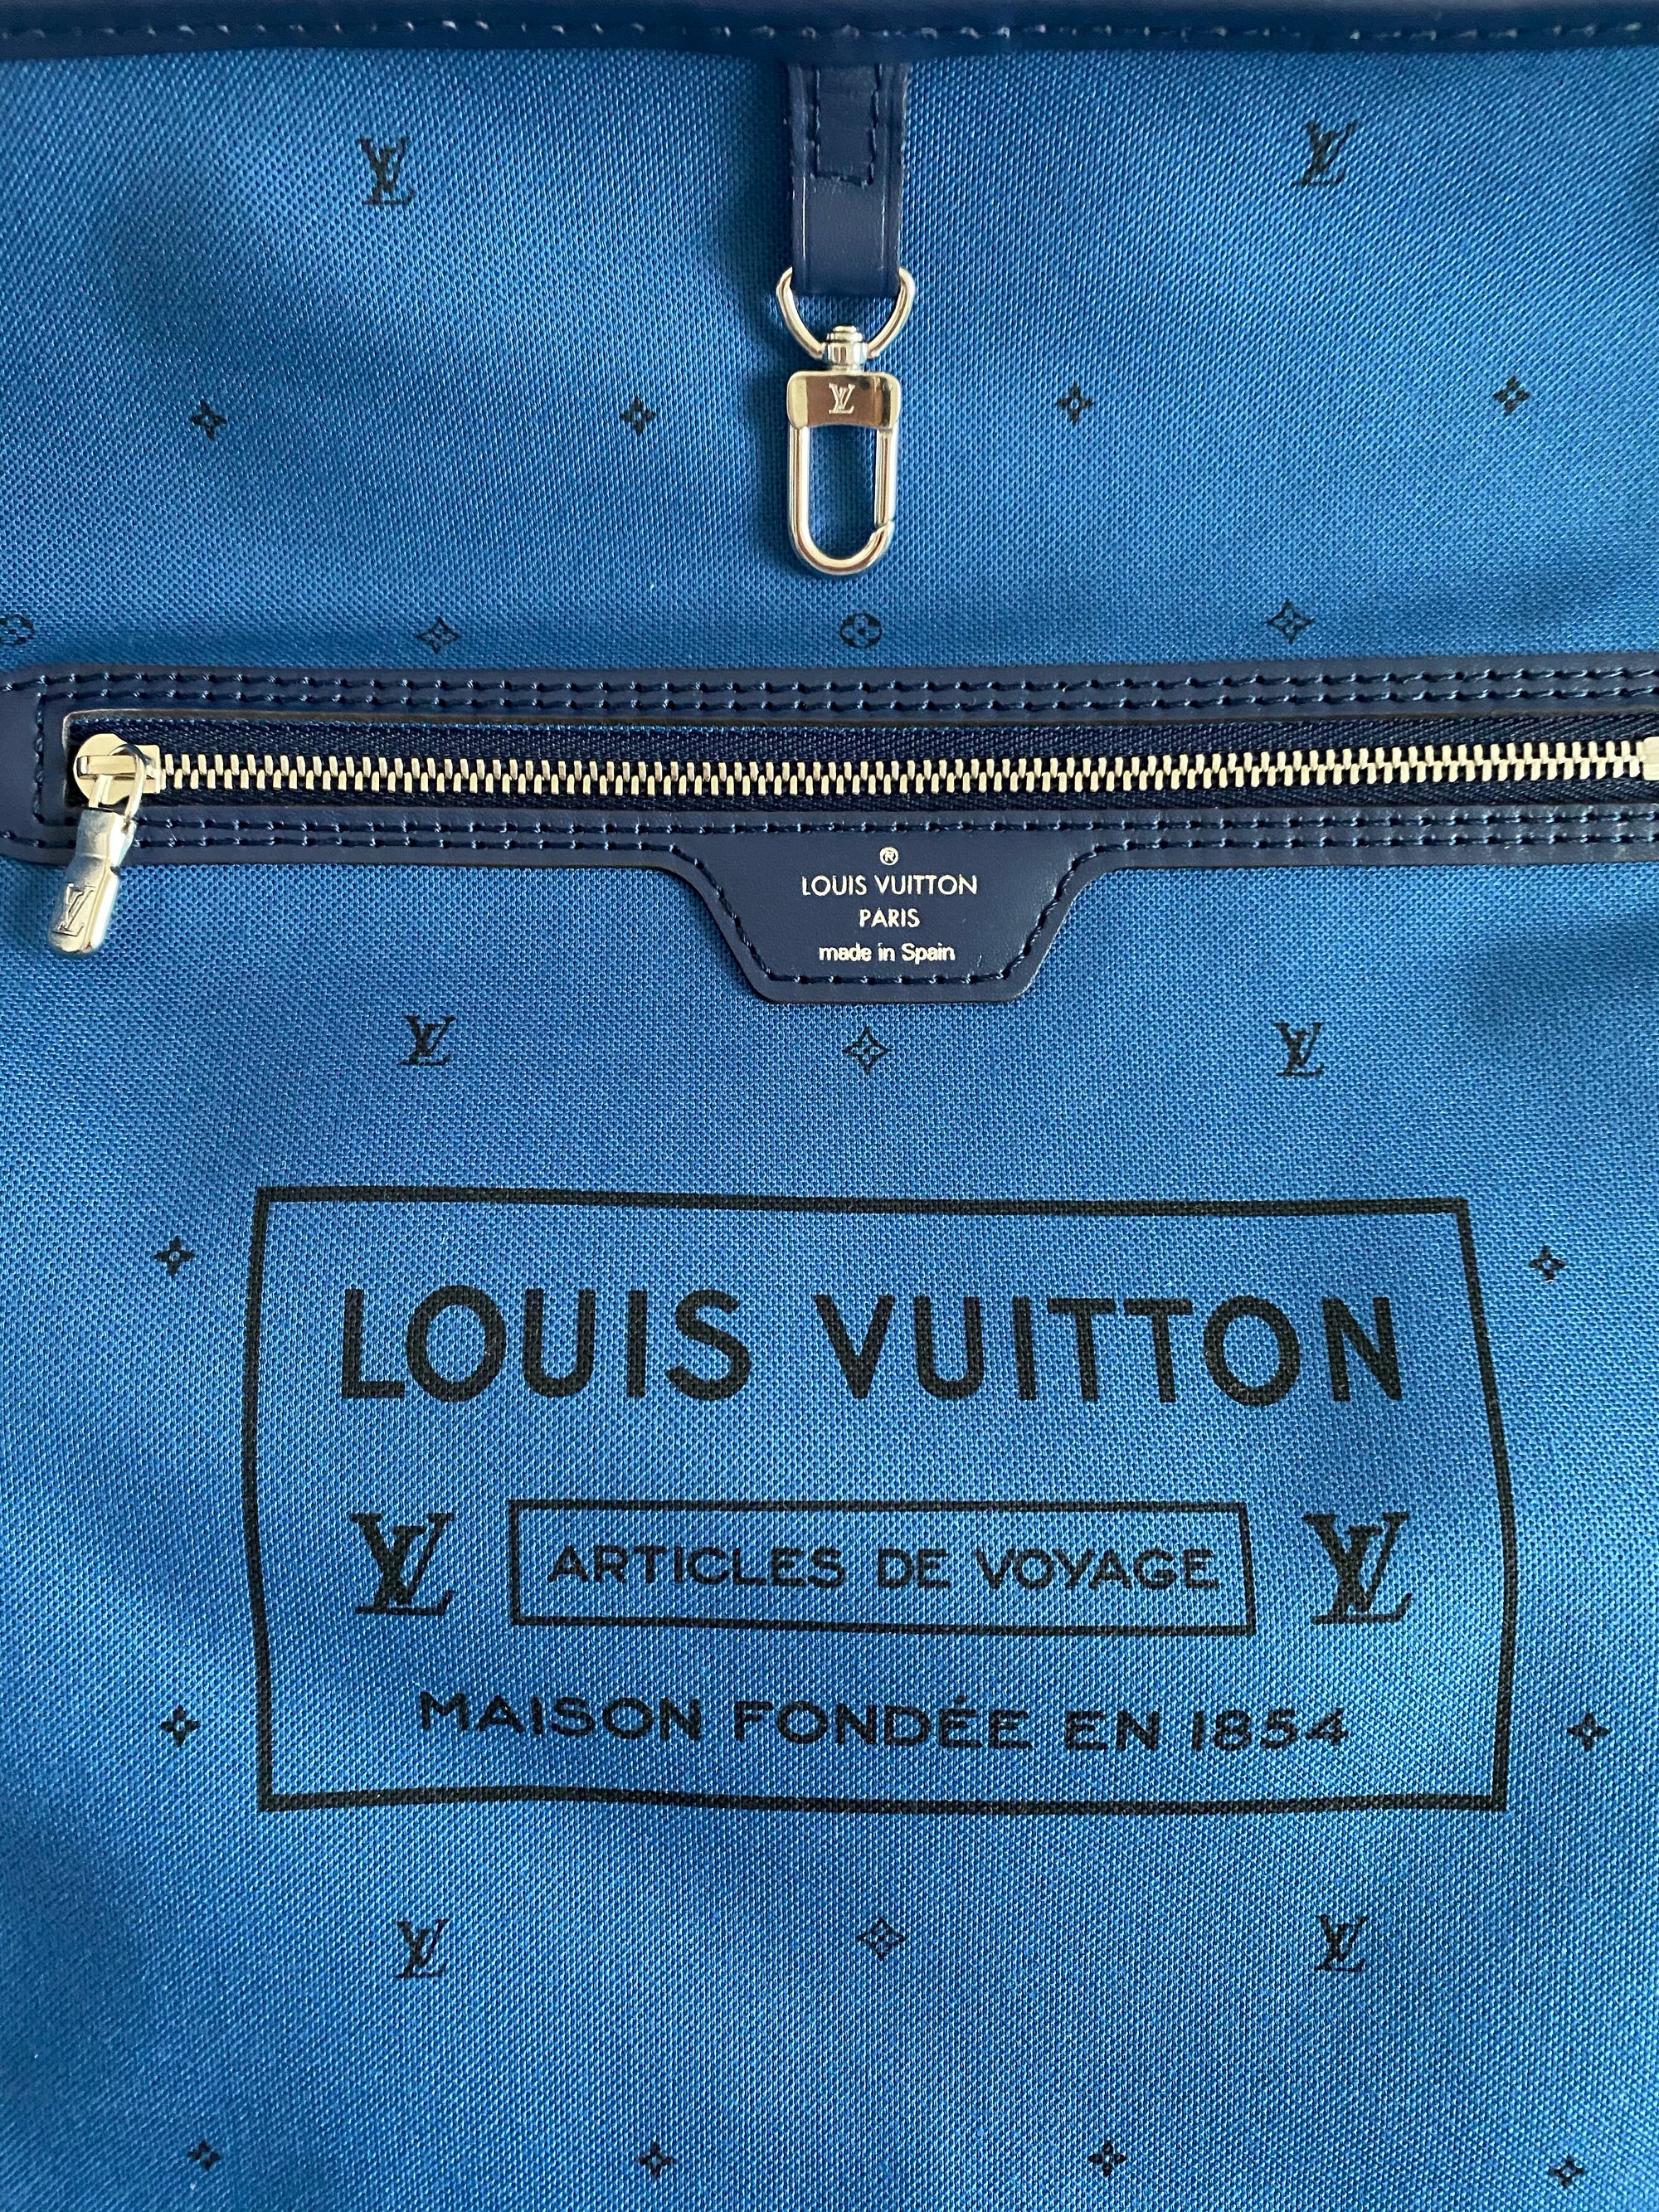 Louis Vuitton - Articles de Voyage Textile Bag